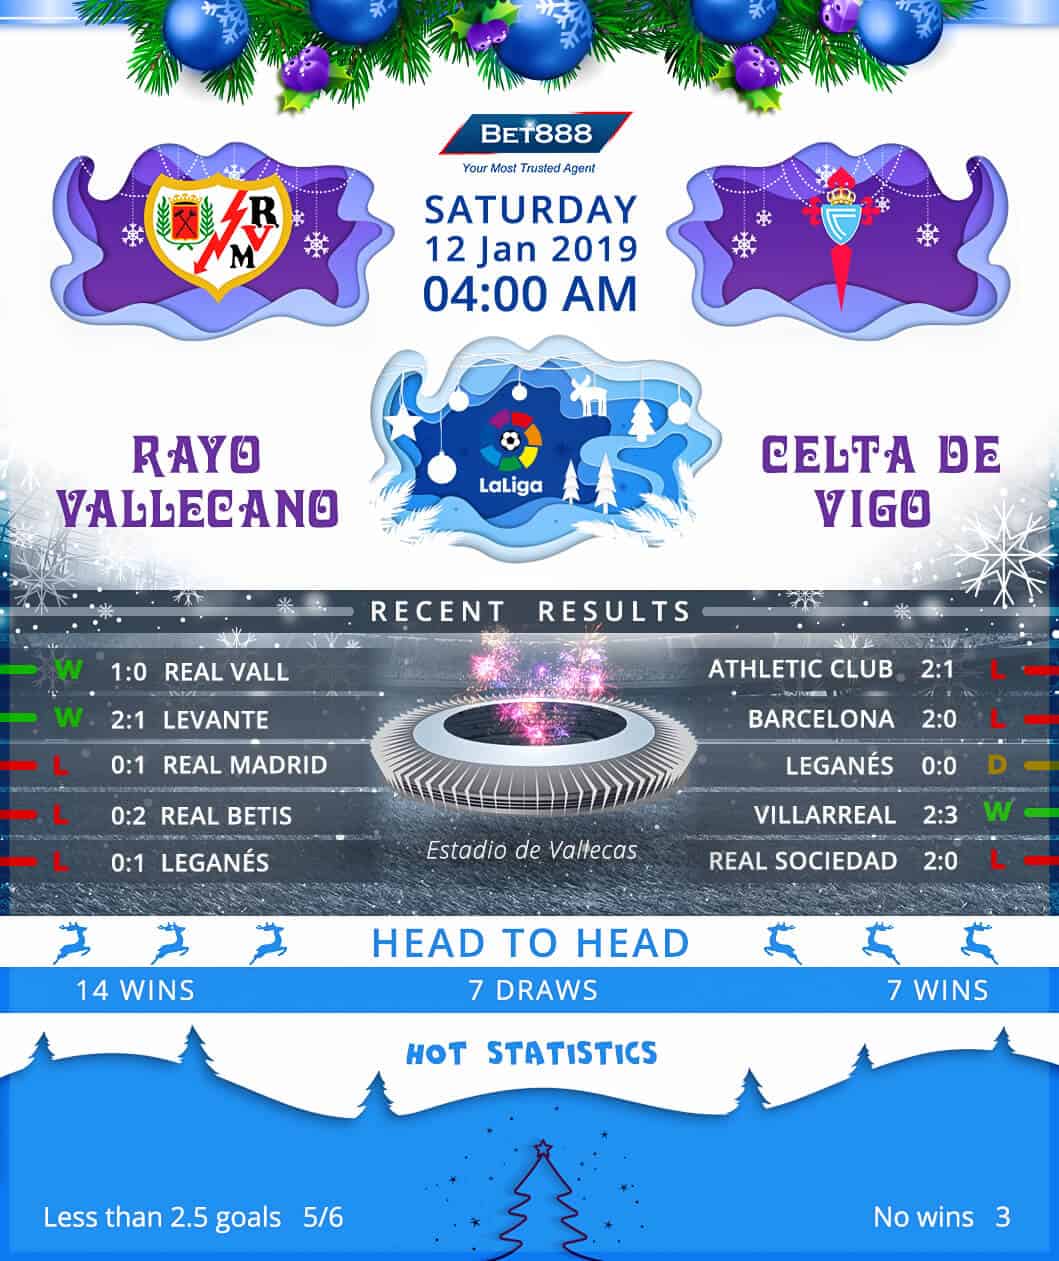 Rayo Vallecano vs Celta Vigo﻿ 12/01/19